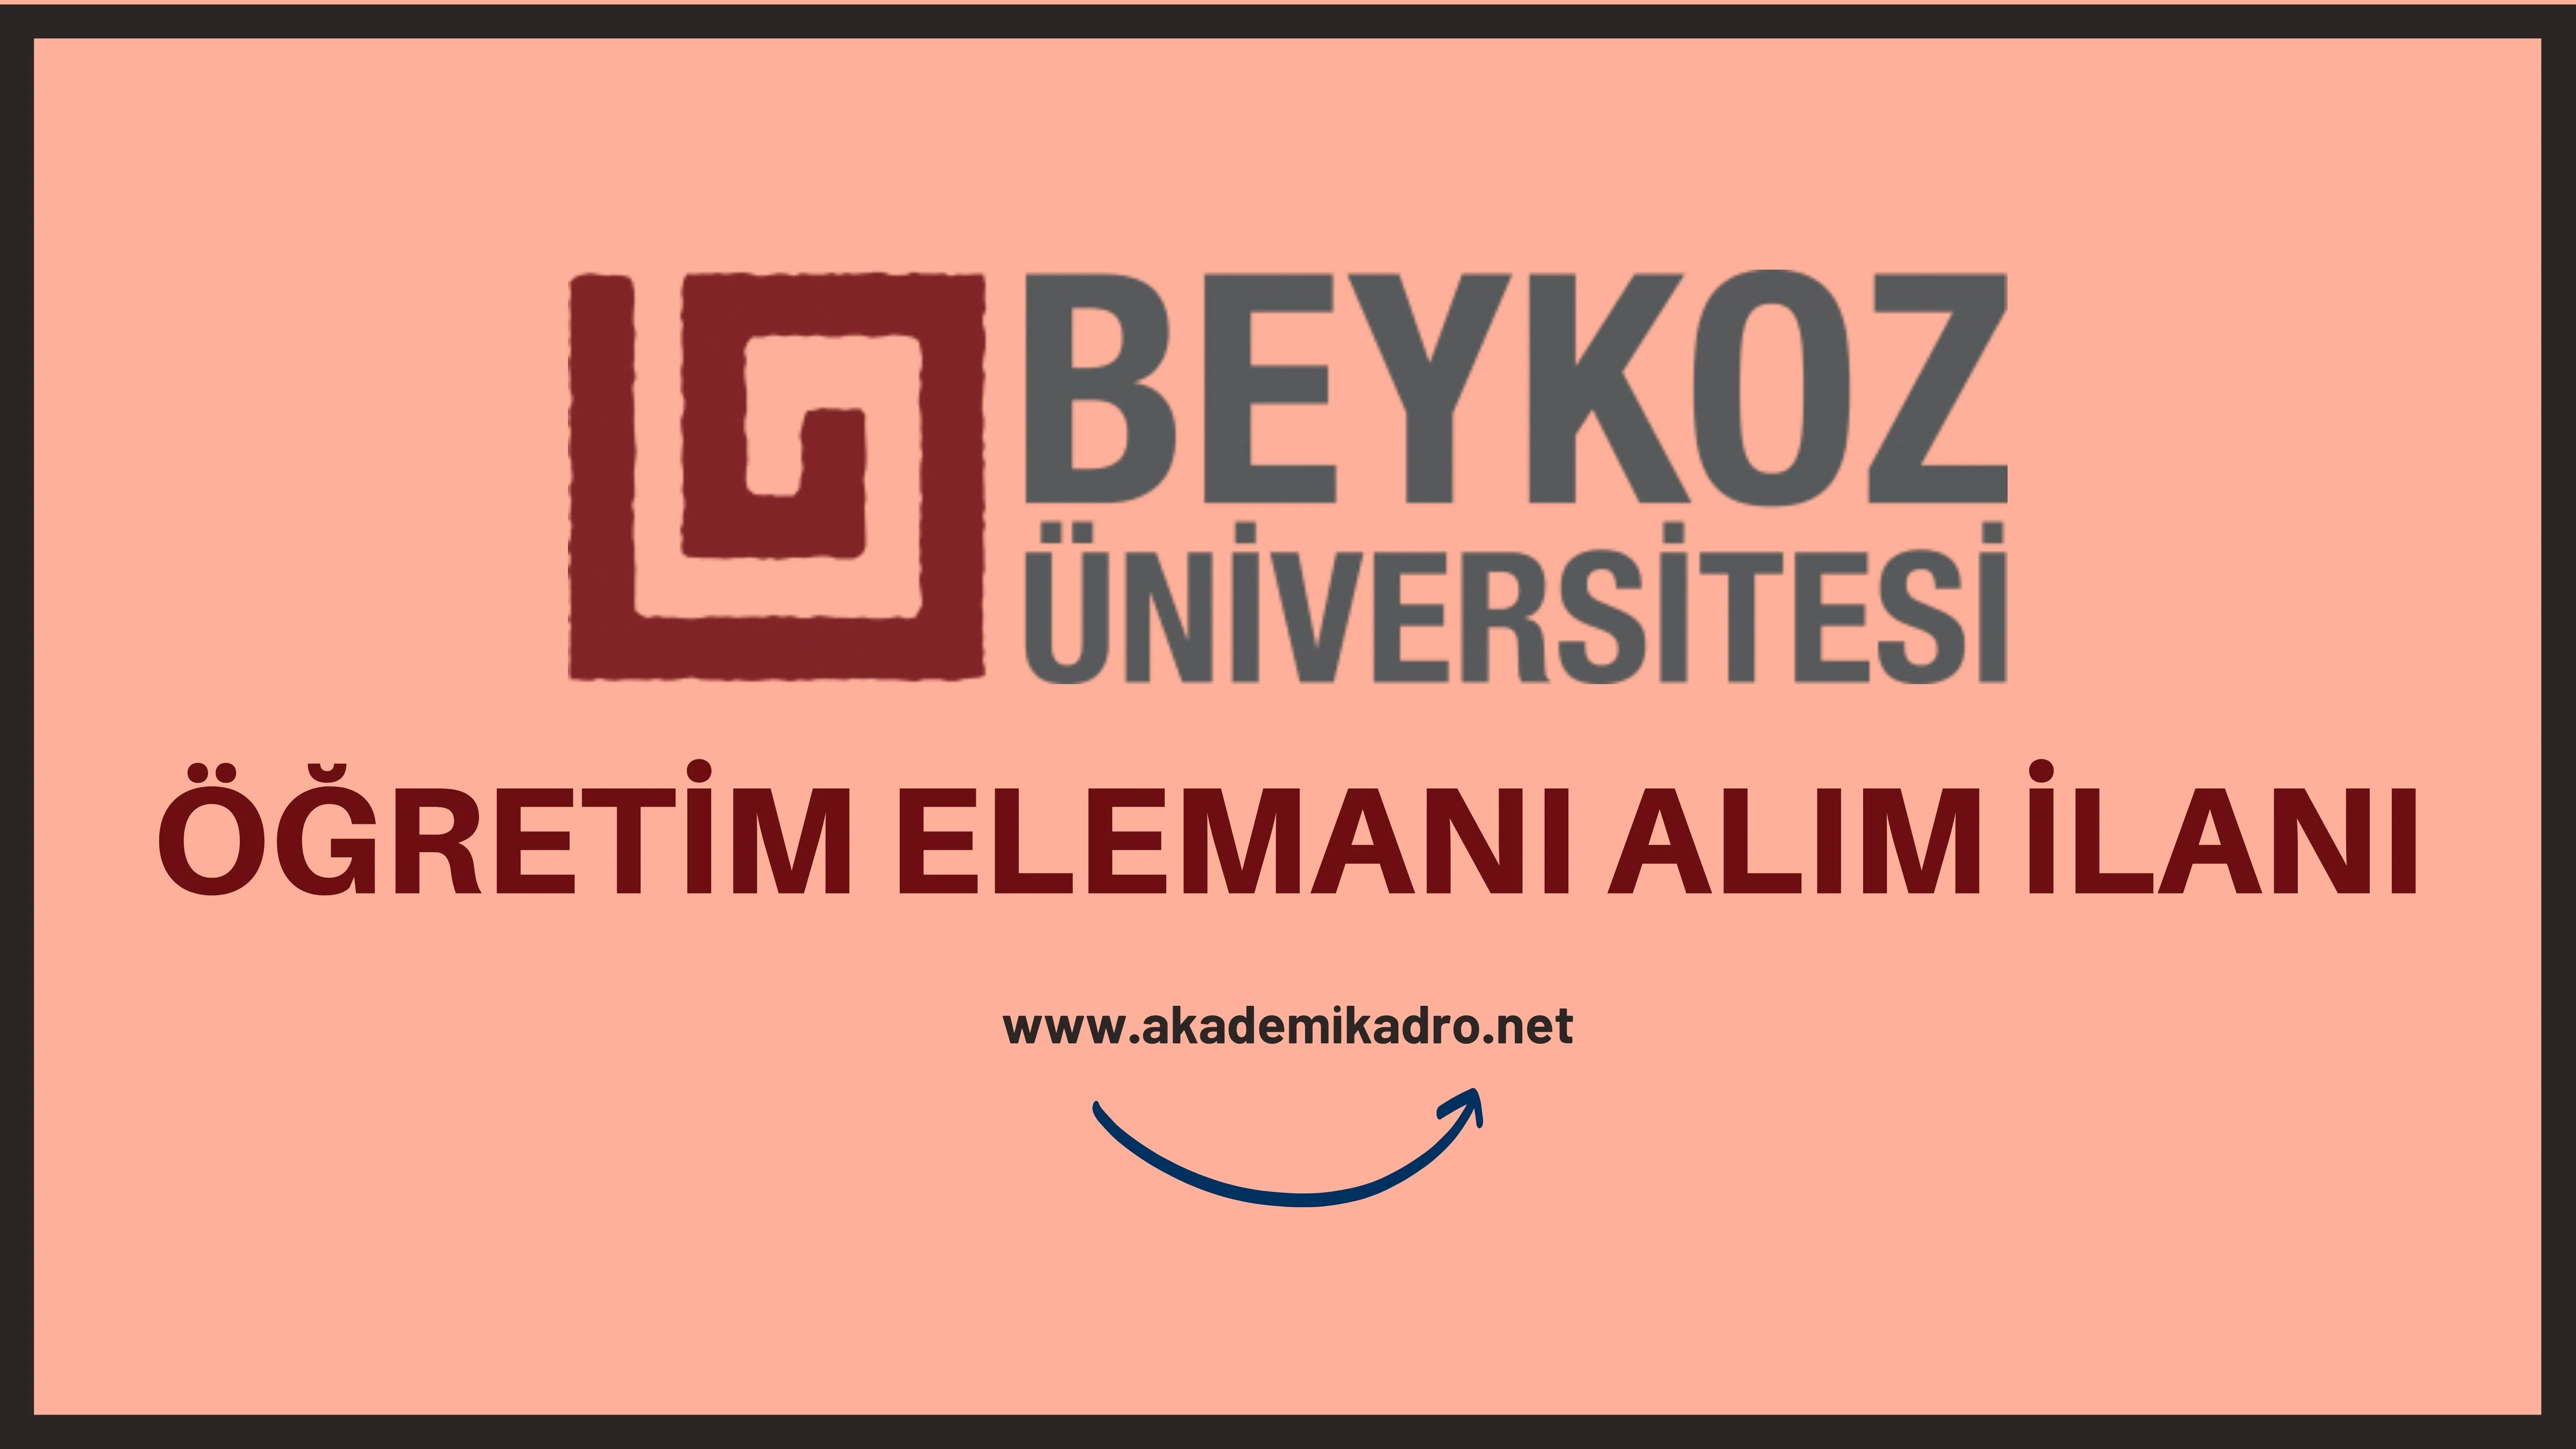 Beykoz Üniversitesi 14 Öğretim üyesi, 3 Öğretim görevlisi ve 7 Araştırma görevlisi alacaktır. 